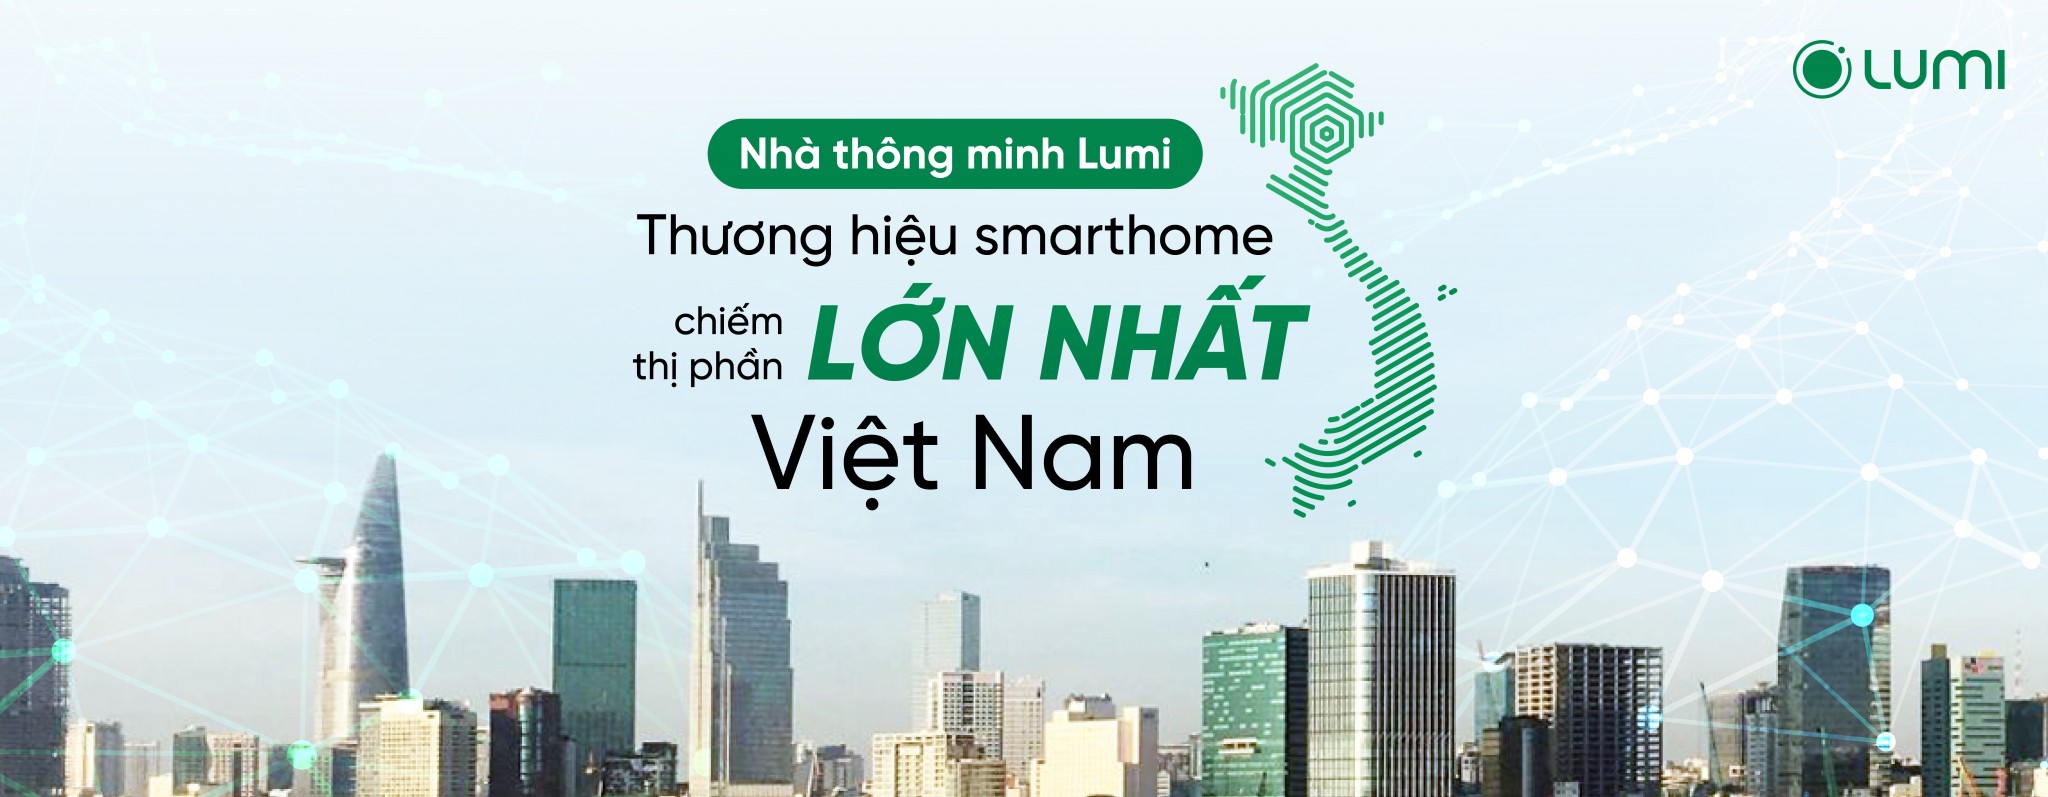 Công ty cổ phần Lumi Việt Nam